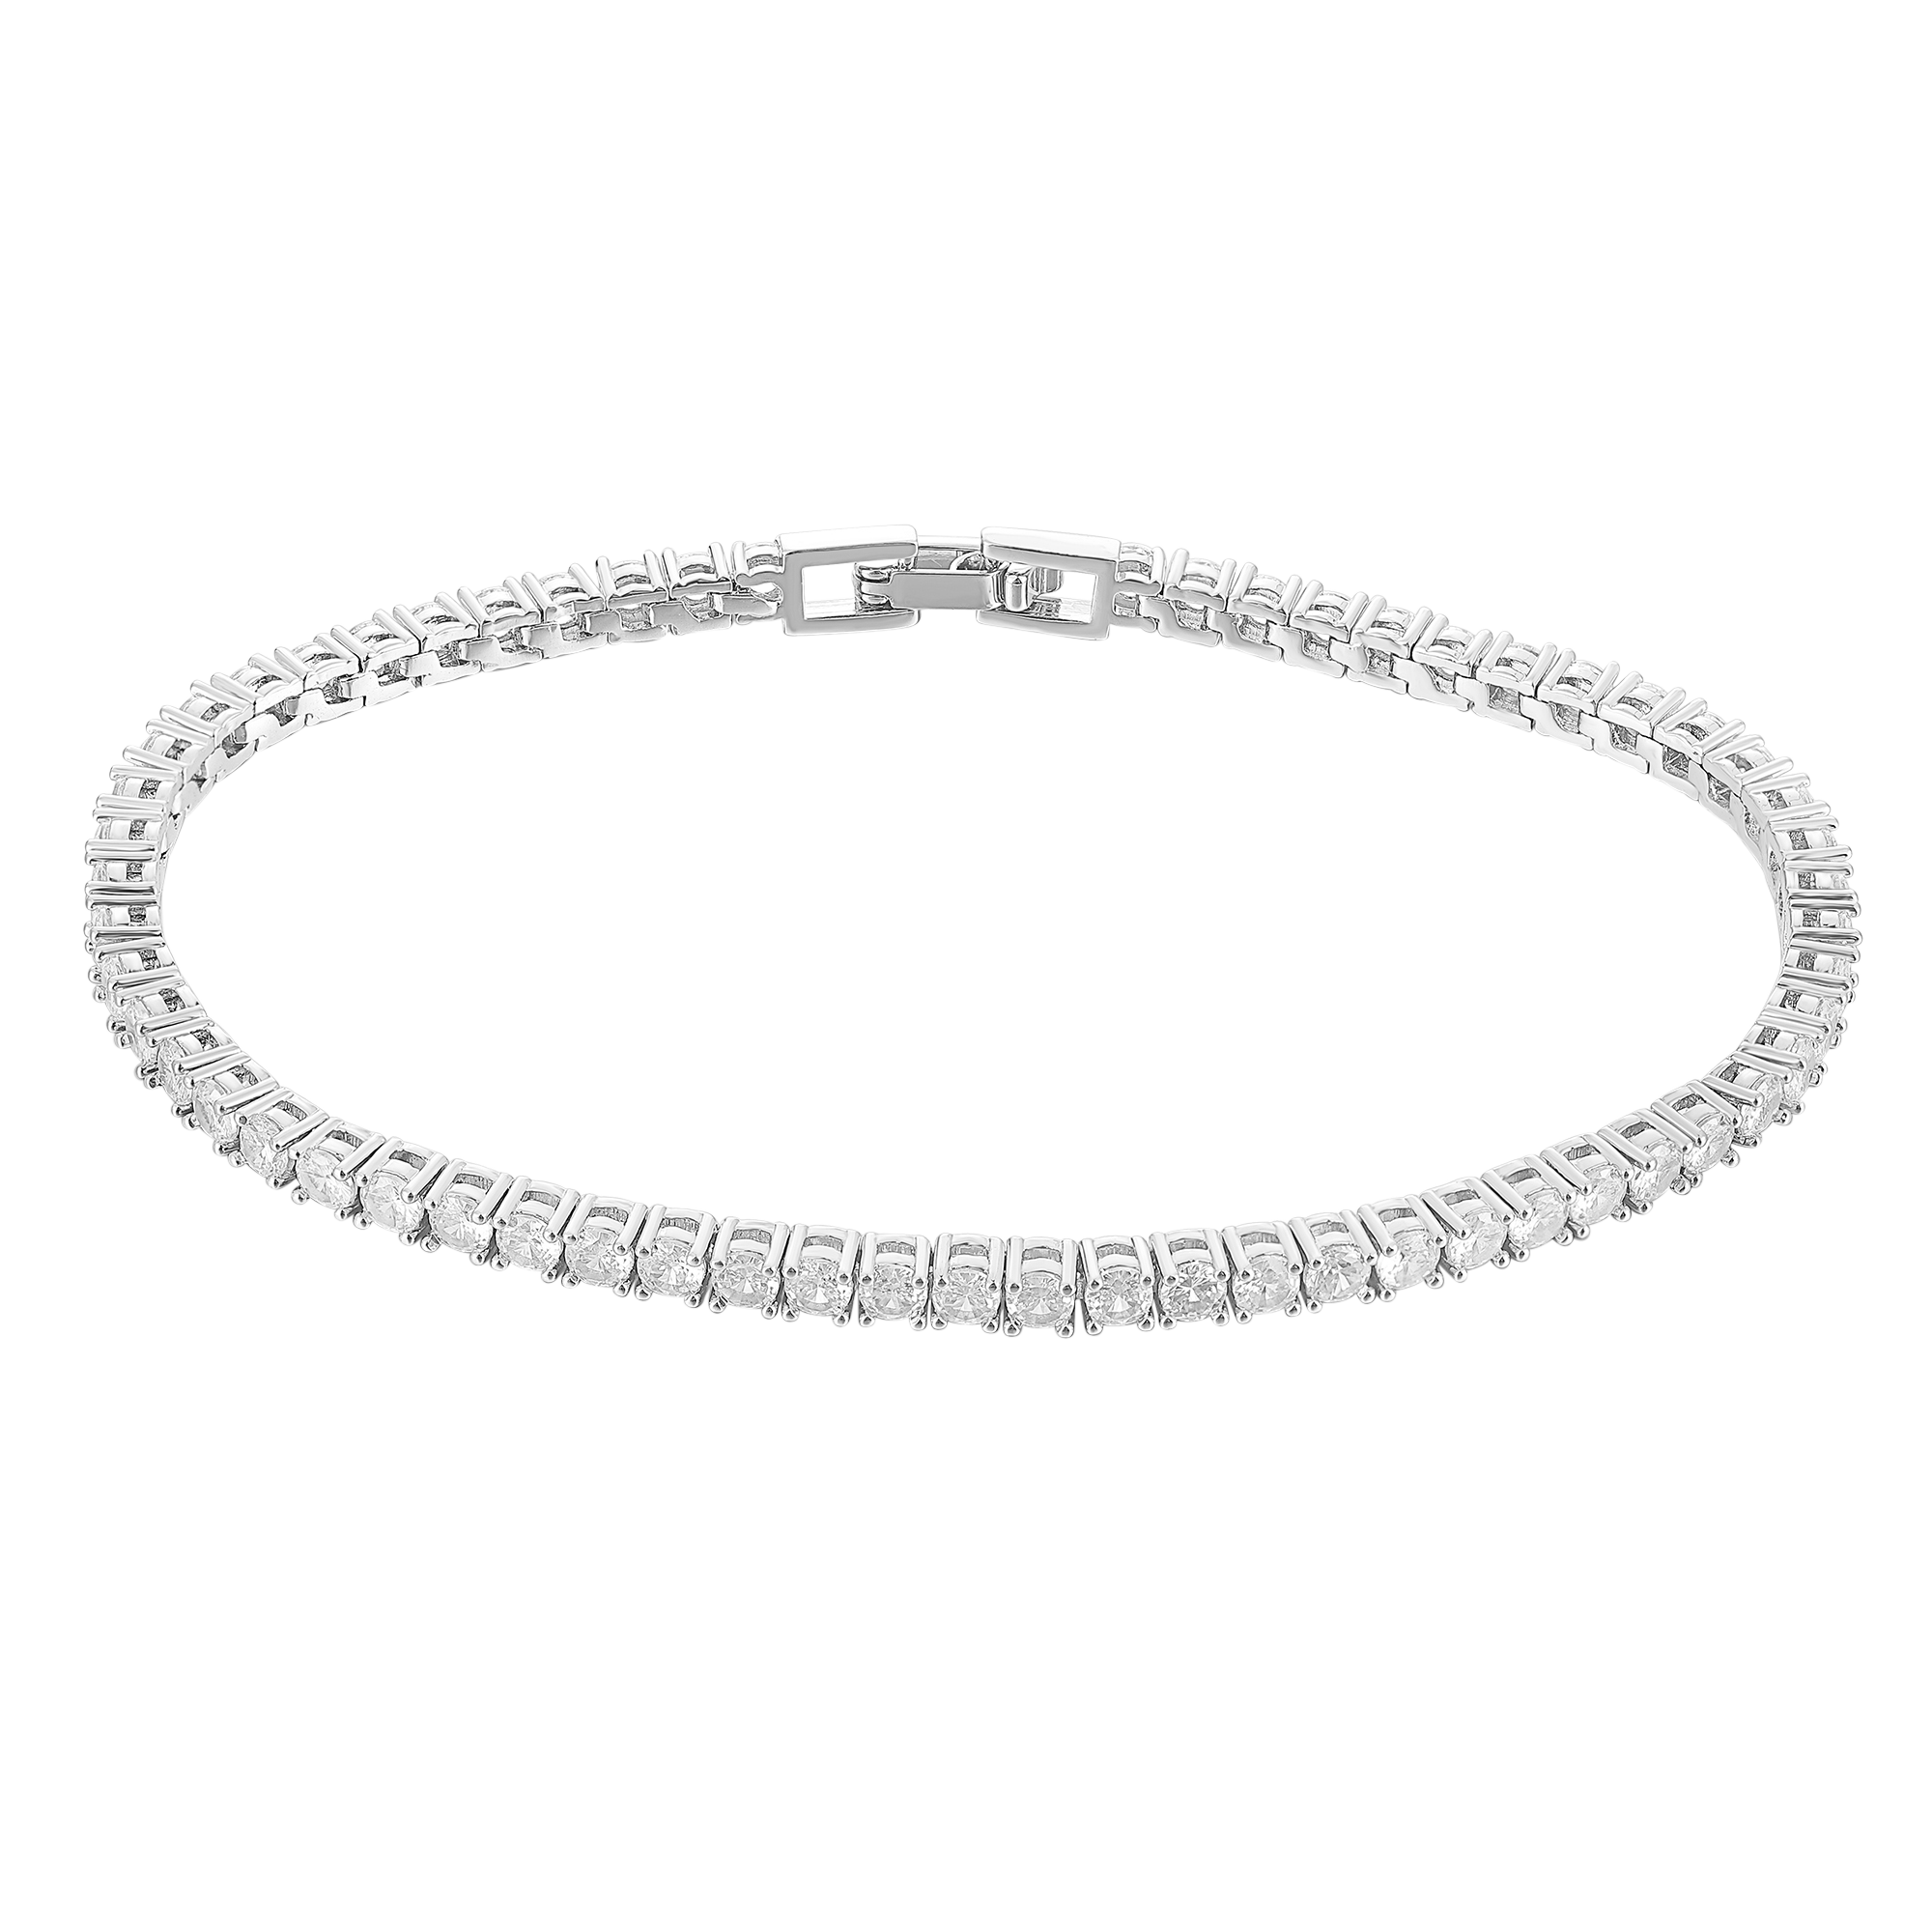 Women's Tennis Bracelet - White Gold